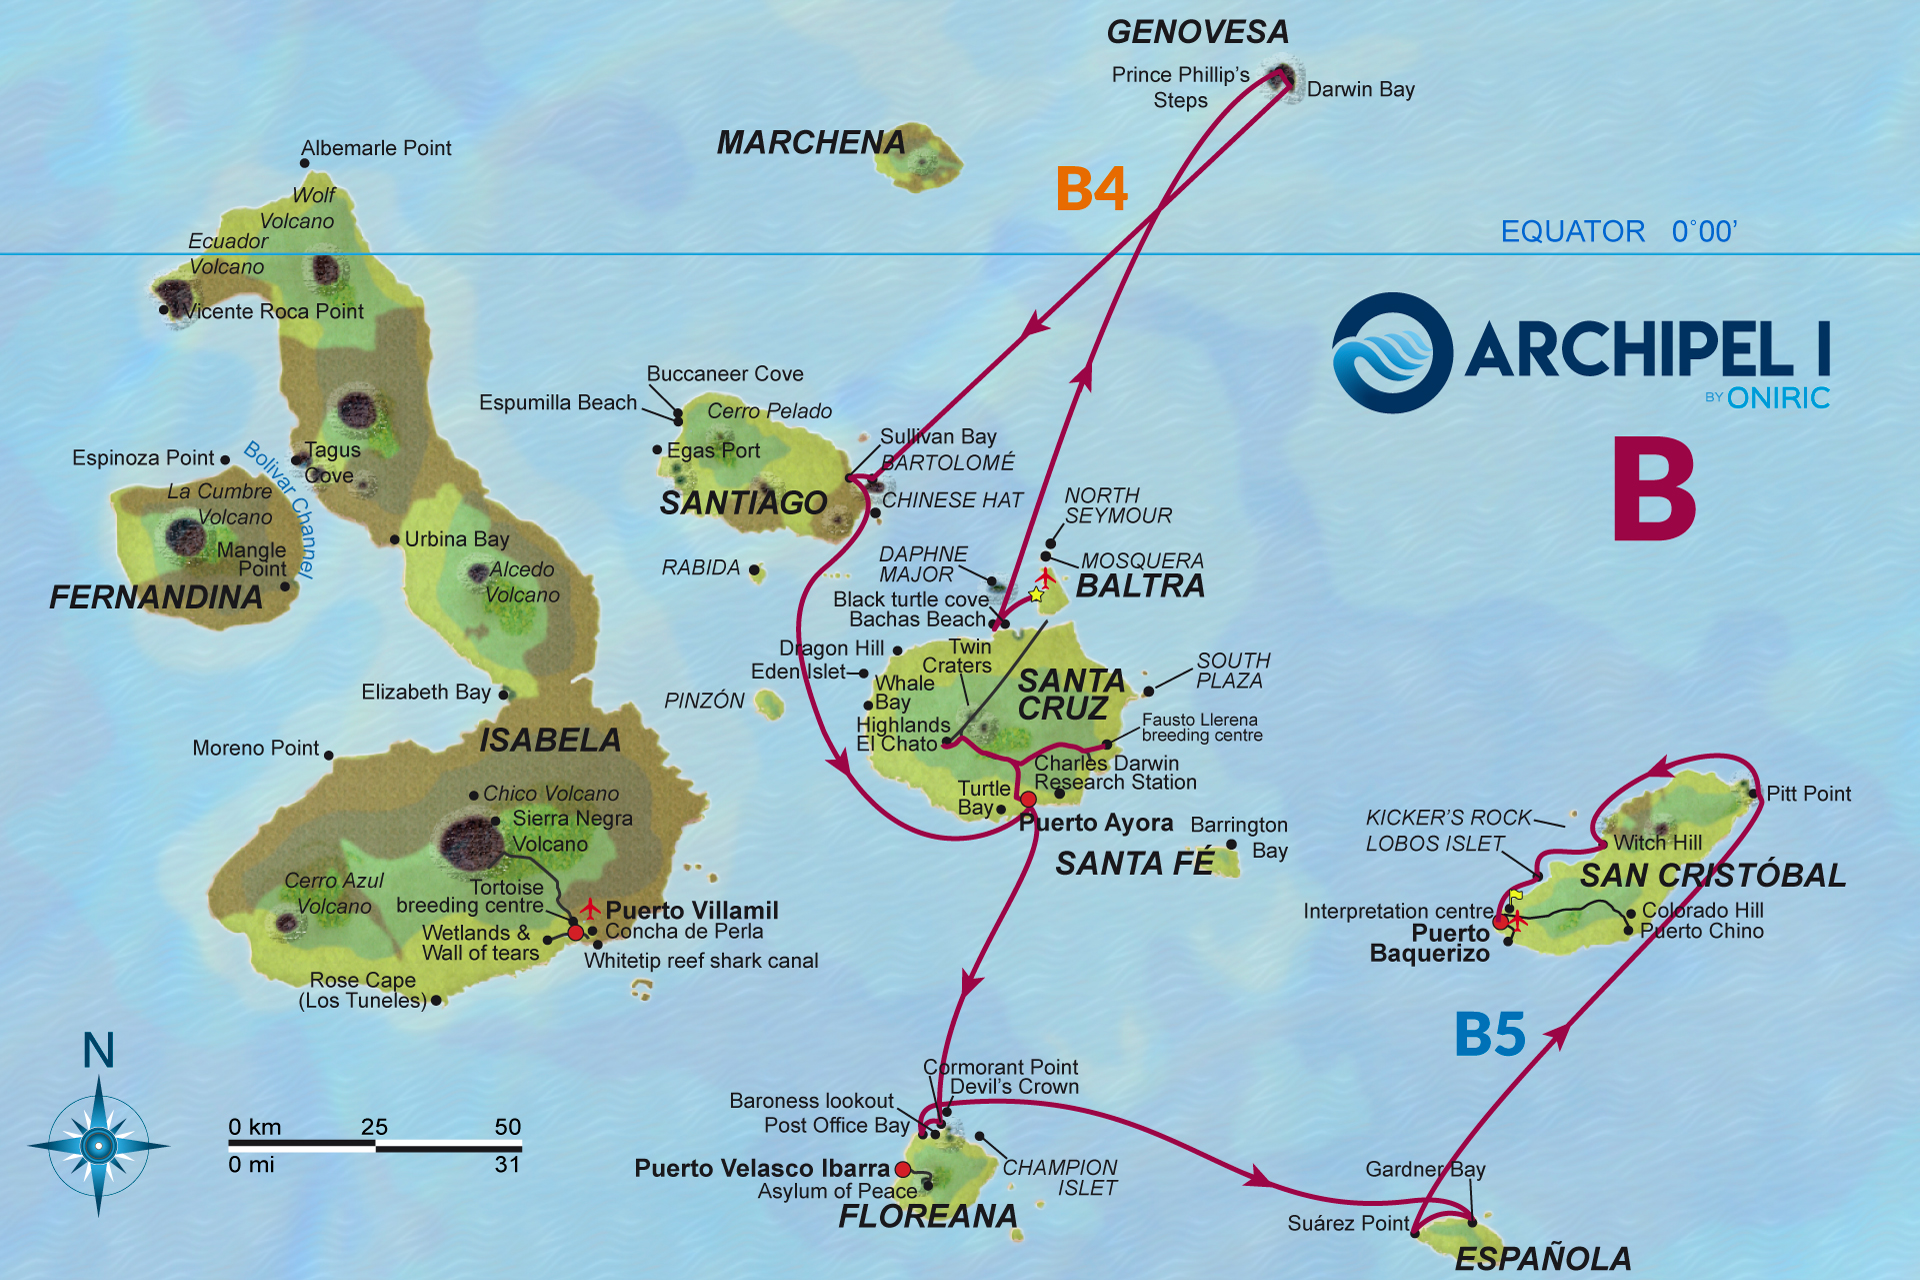 galapagos-map-archipel-oniric